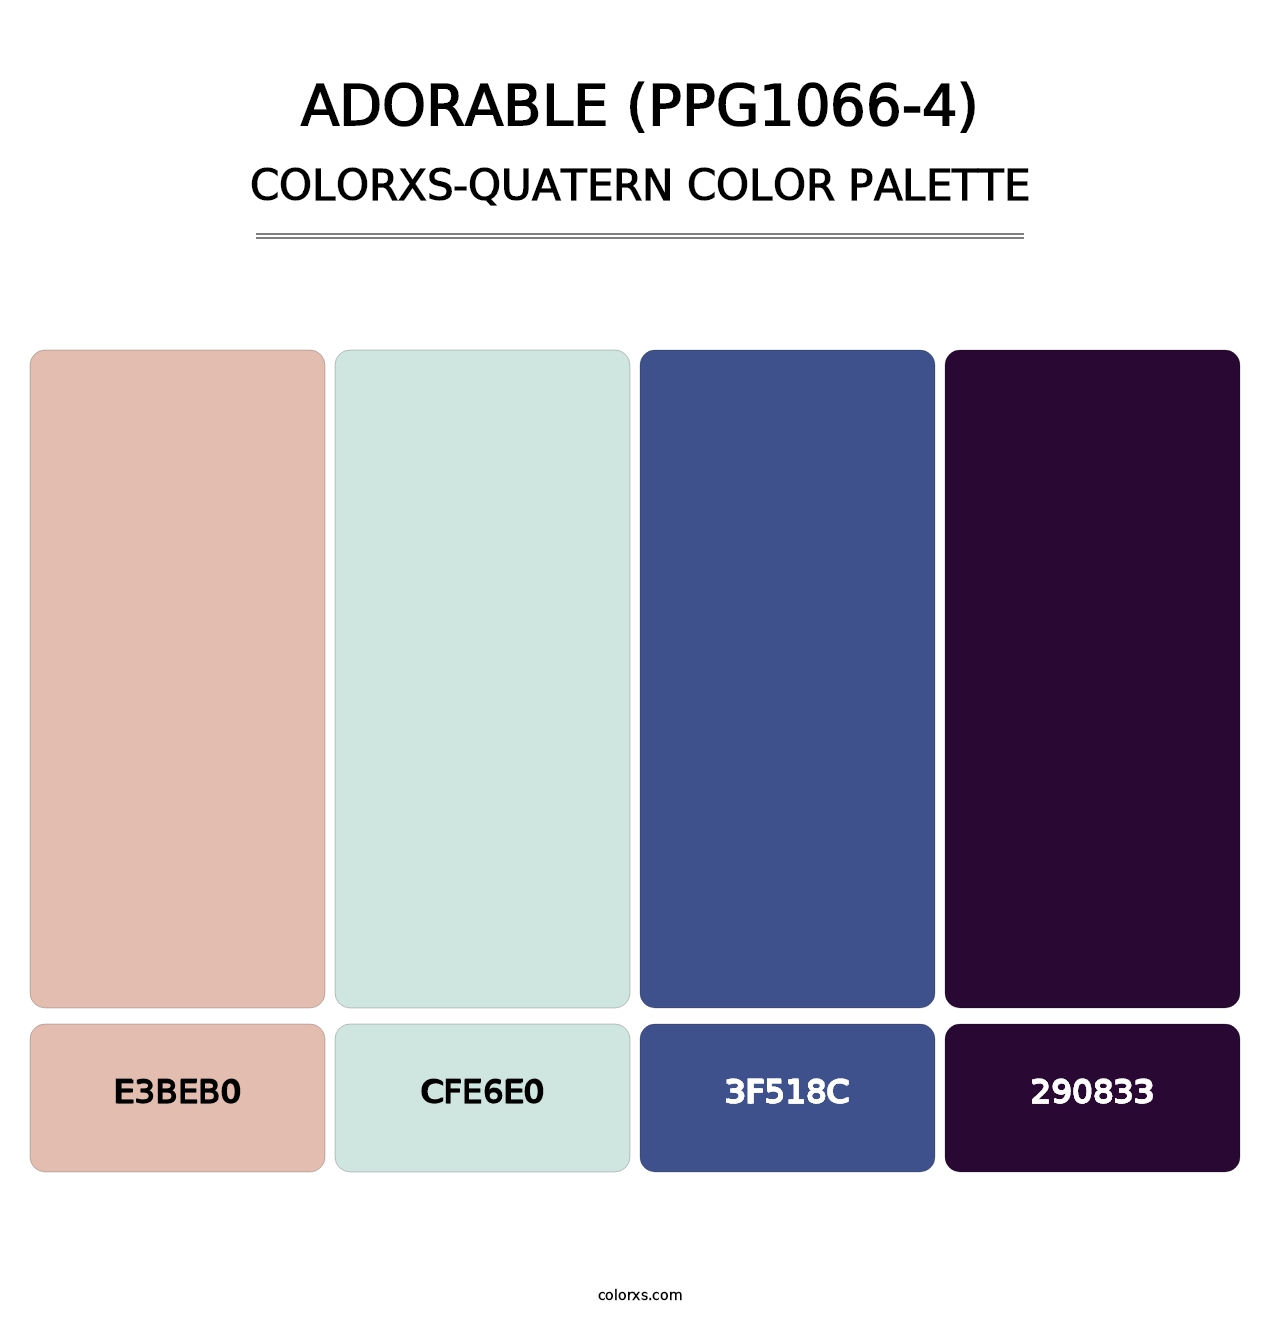 Adorable (PPG1066-4) - Colorxs Quatern Palette